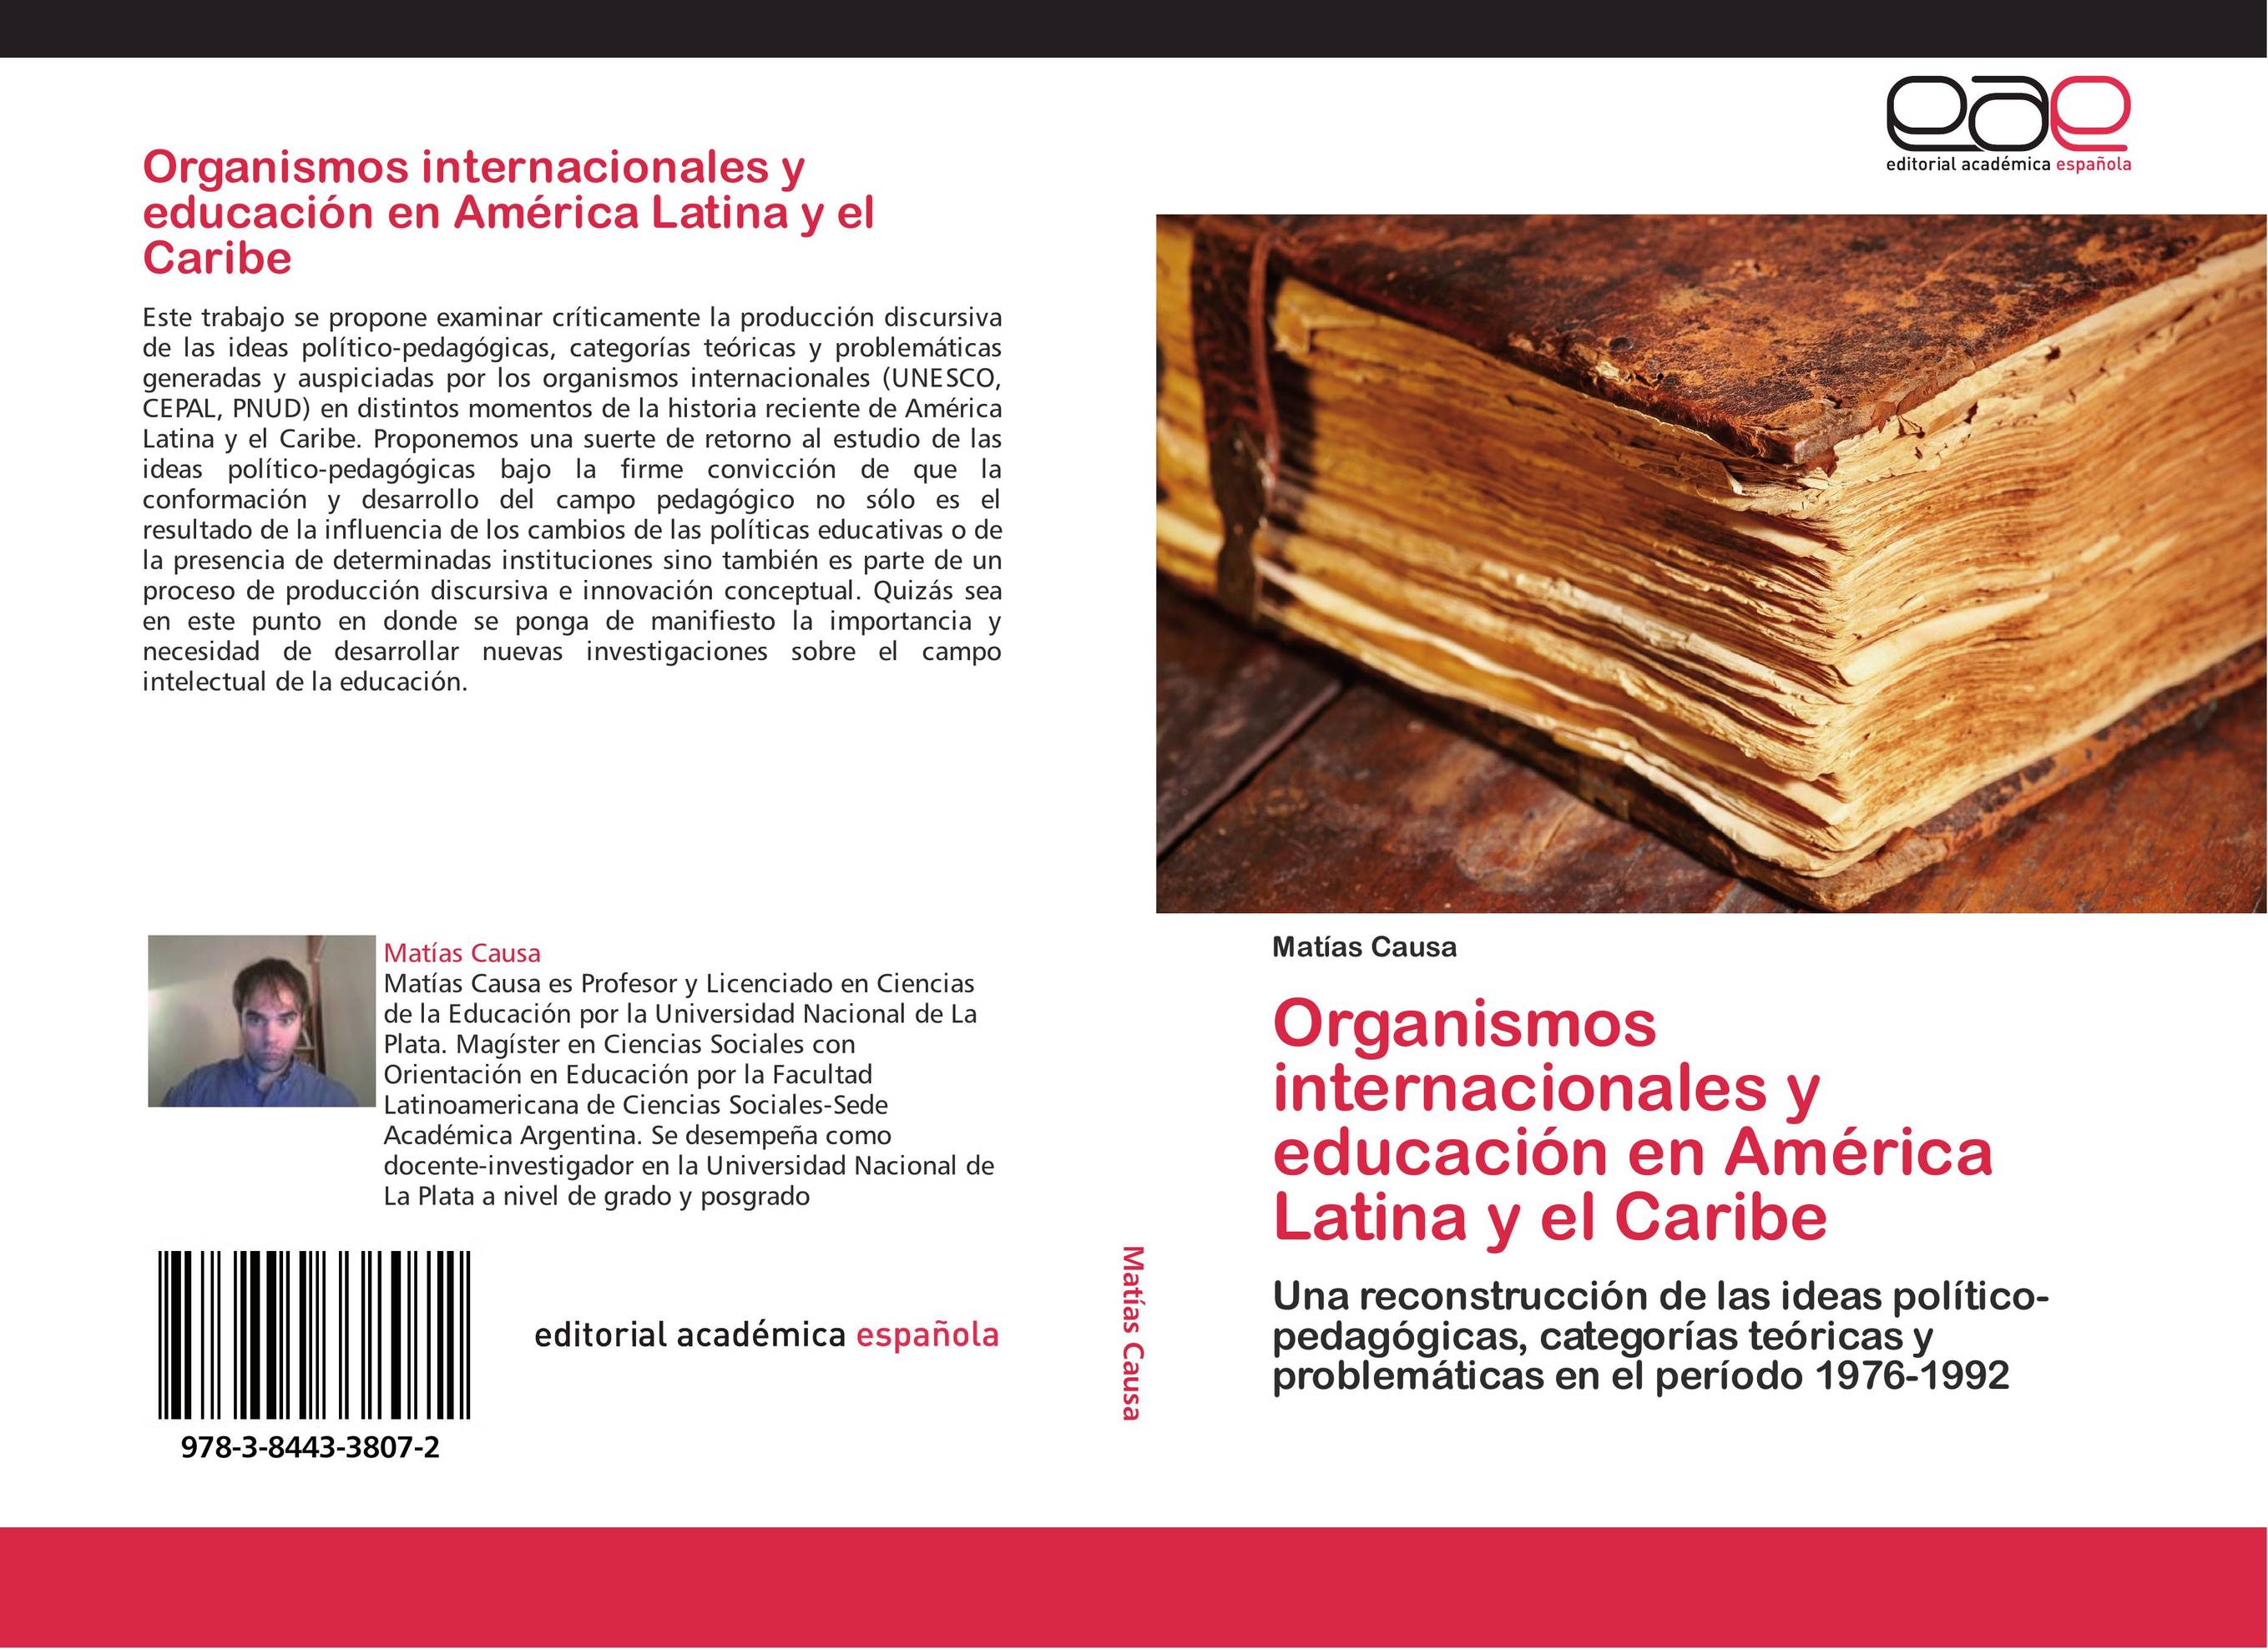 Organismos internacionales y educación en América Latina y el Caribe